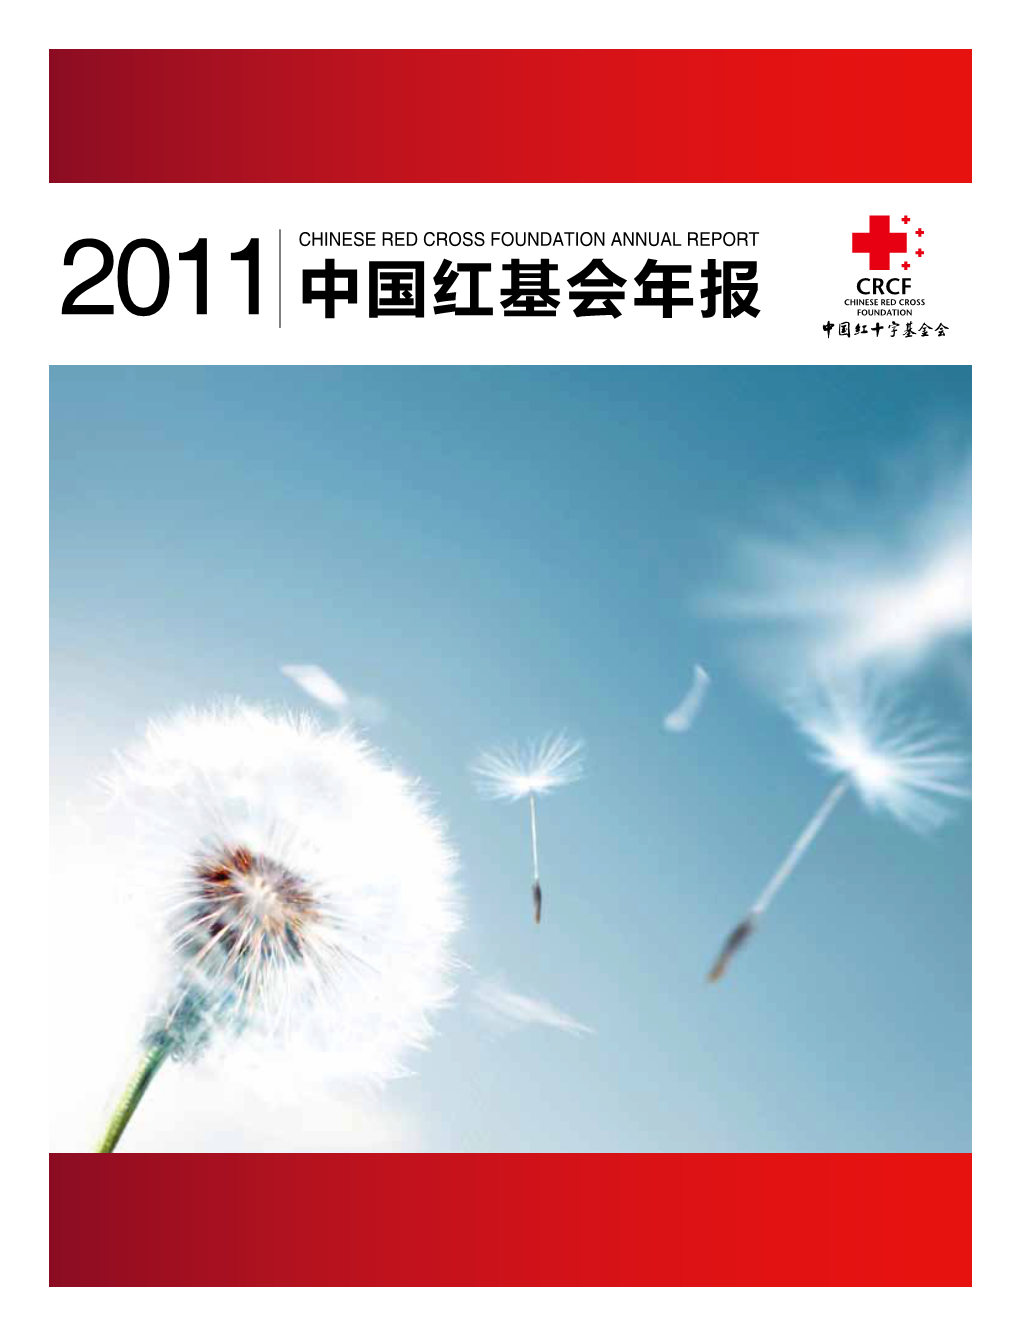 2011中国红基会年报 | 关于我们 About Us 关于我们